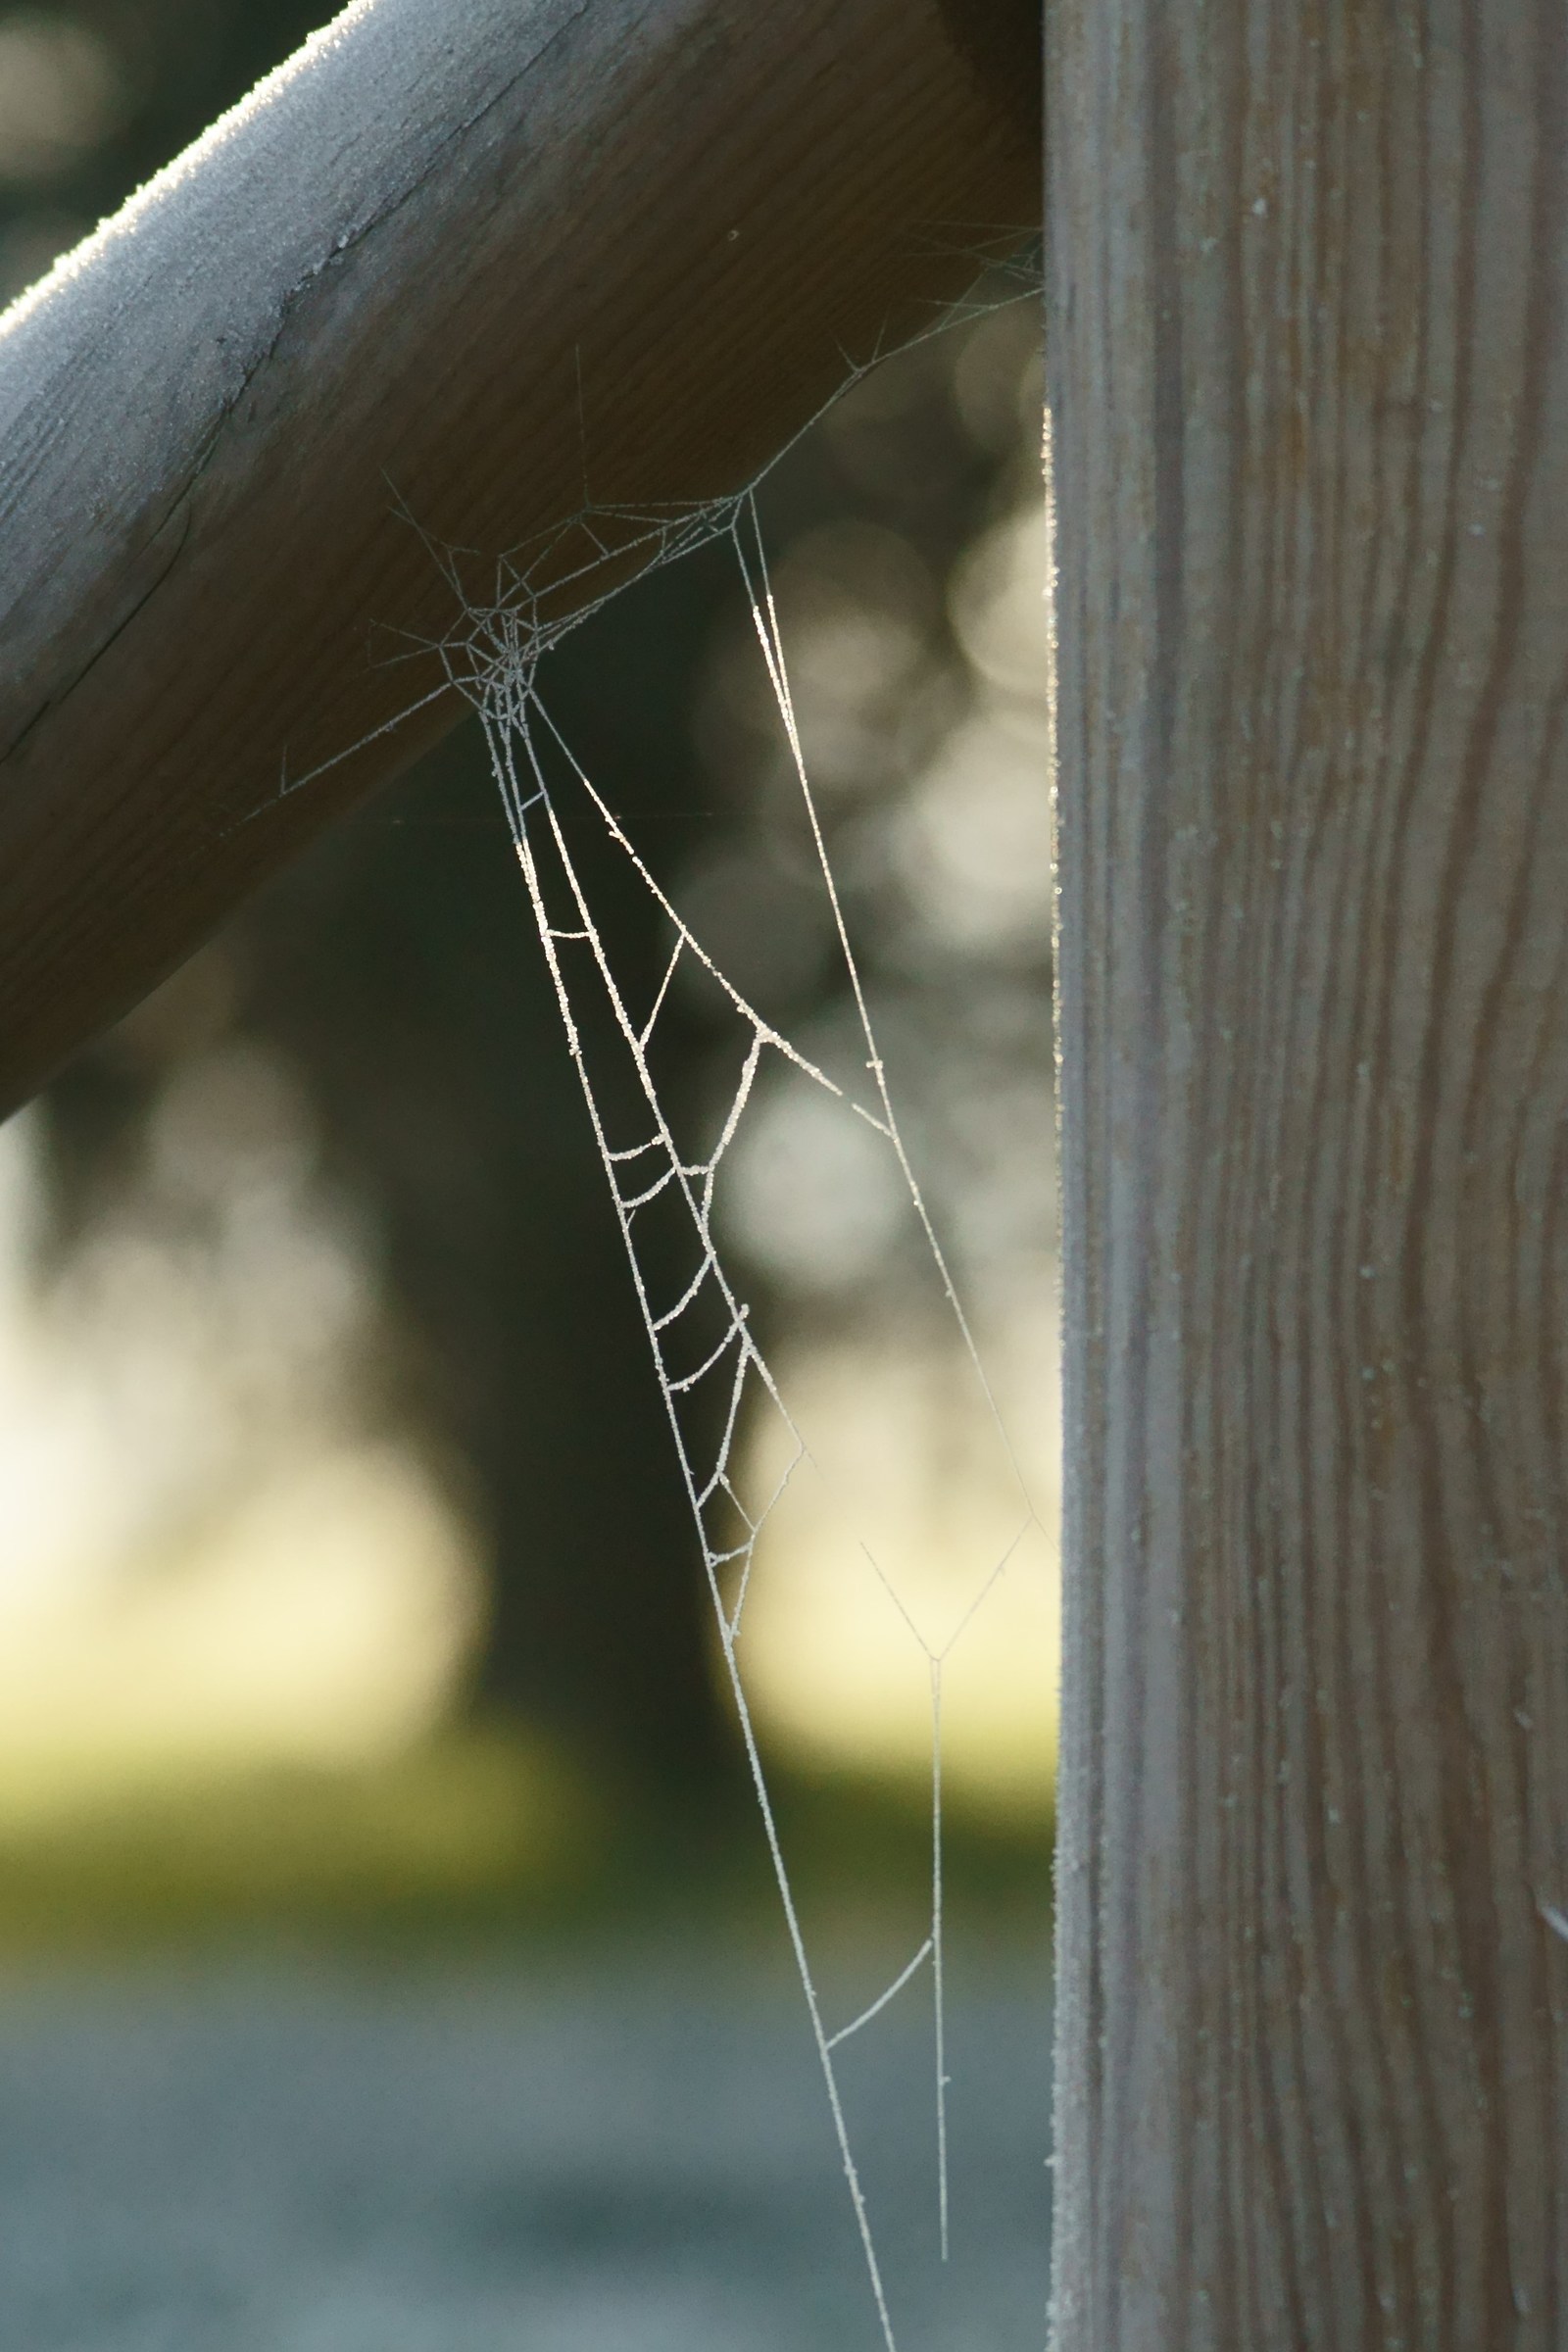 Frozen spider web...